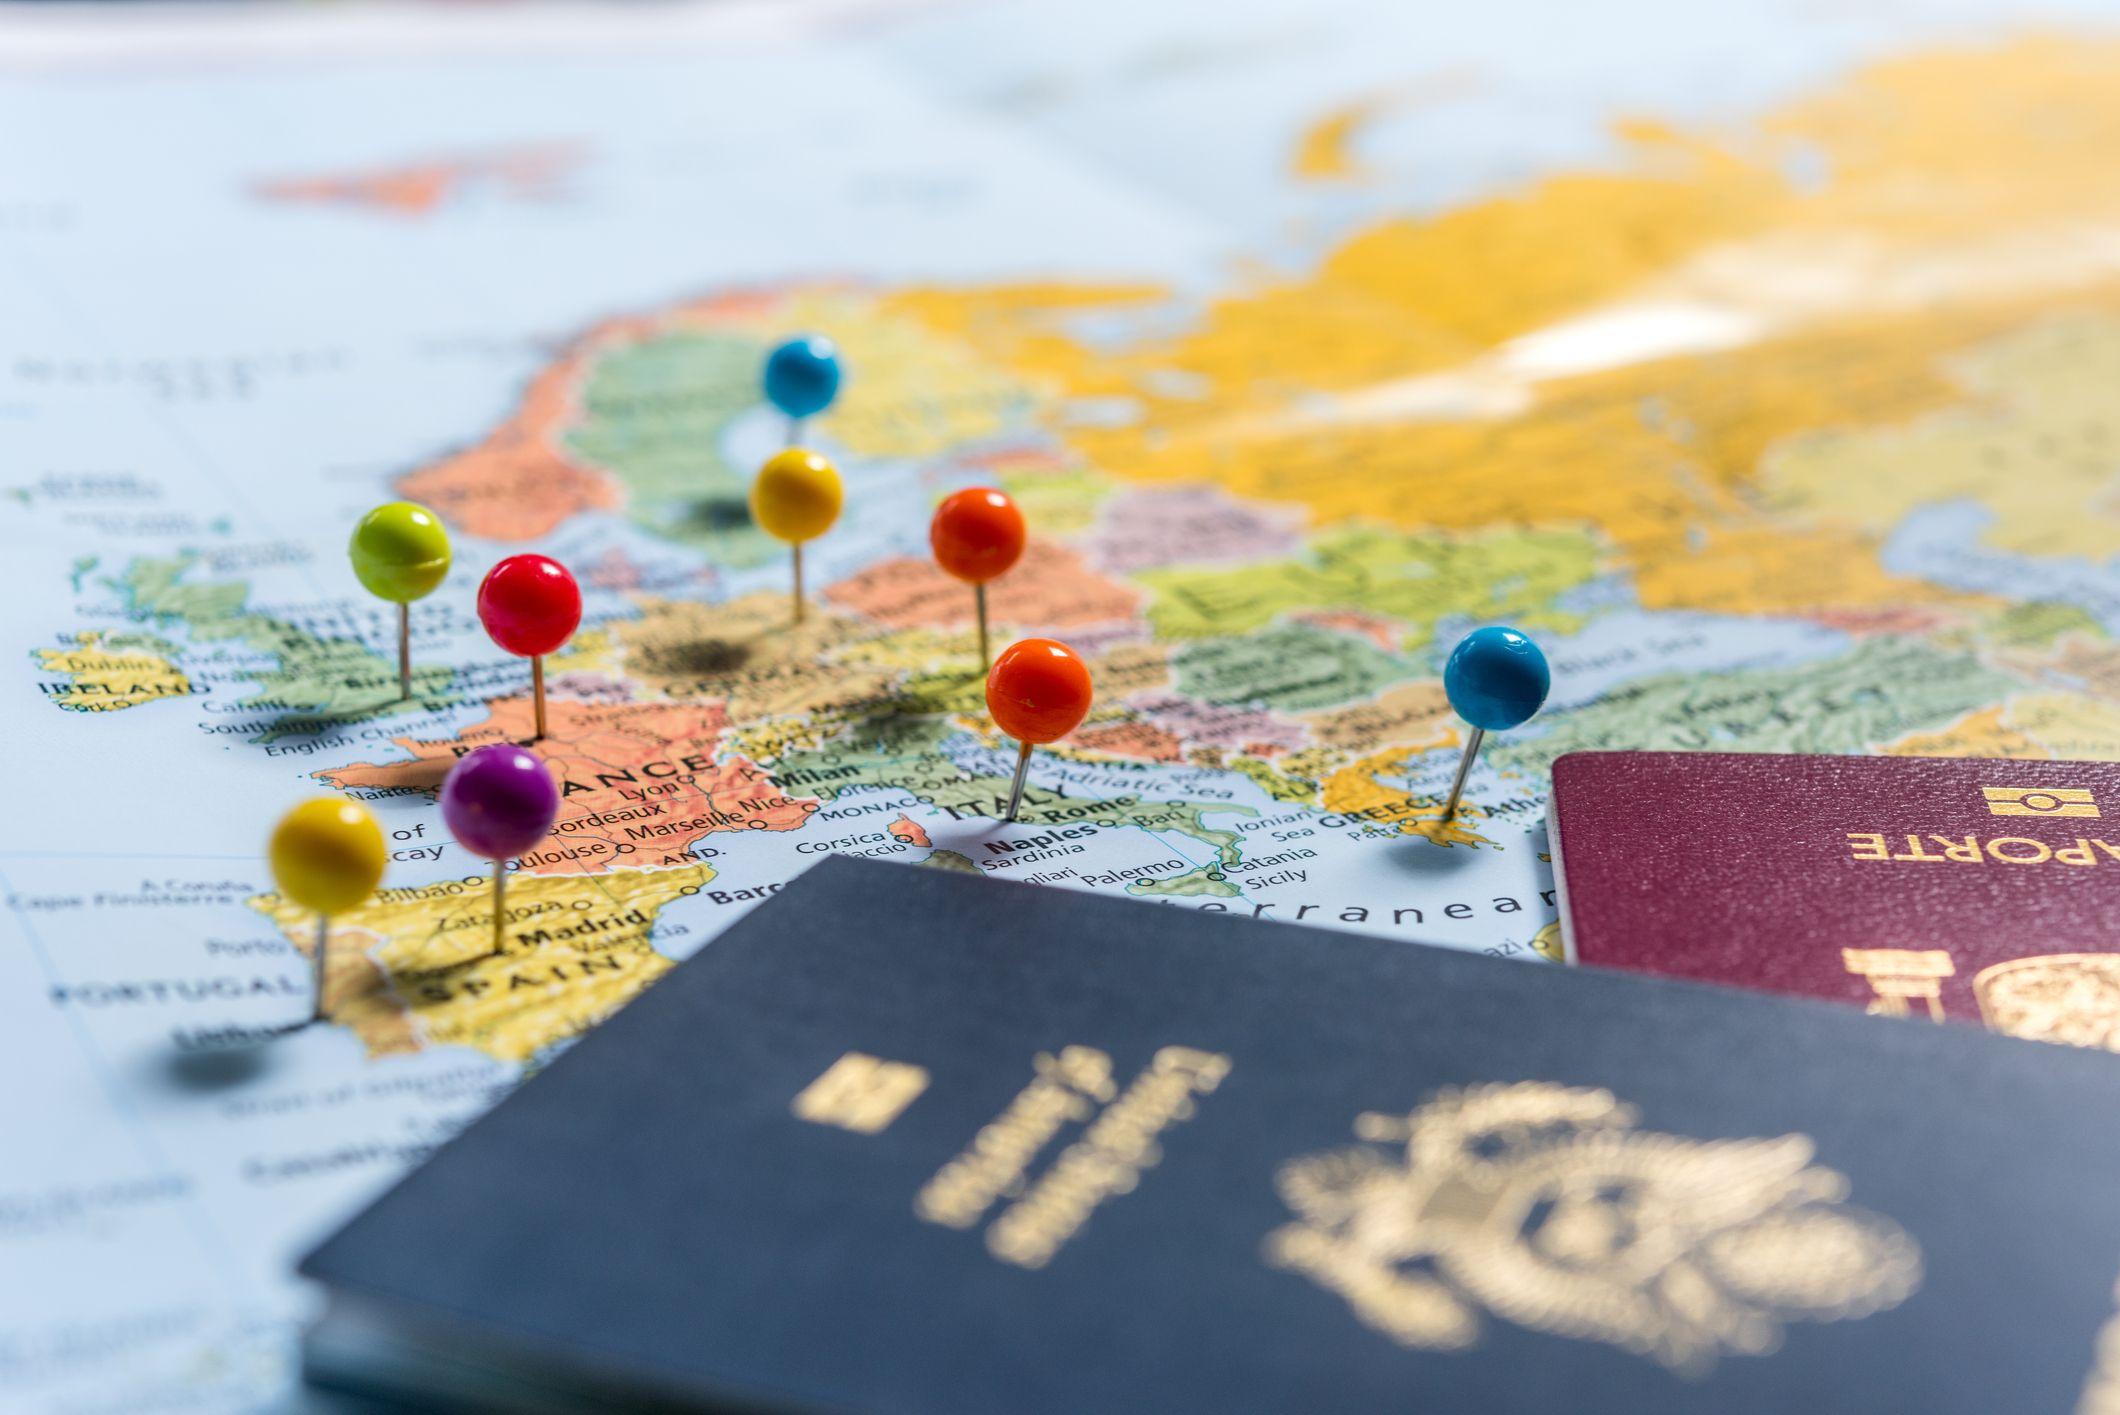 التأشيرات الذهبية وجوازات السفر تحظى بشعبية في أوساط الأفراد الأثرياء